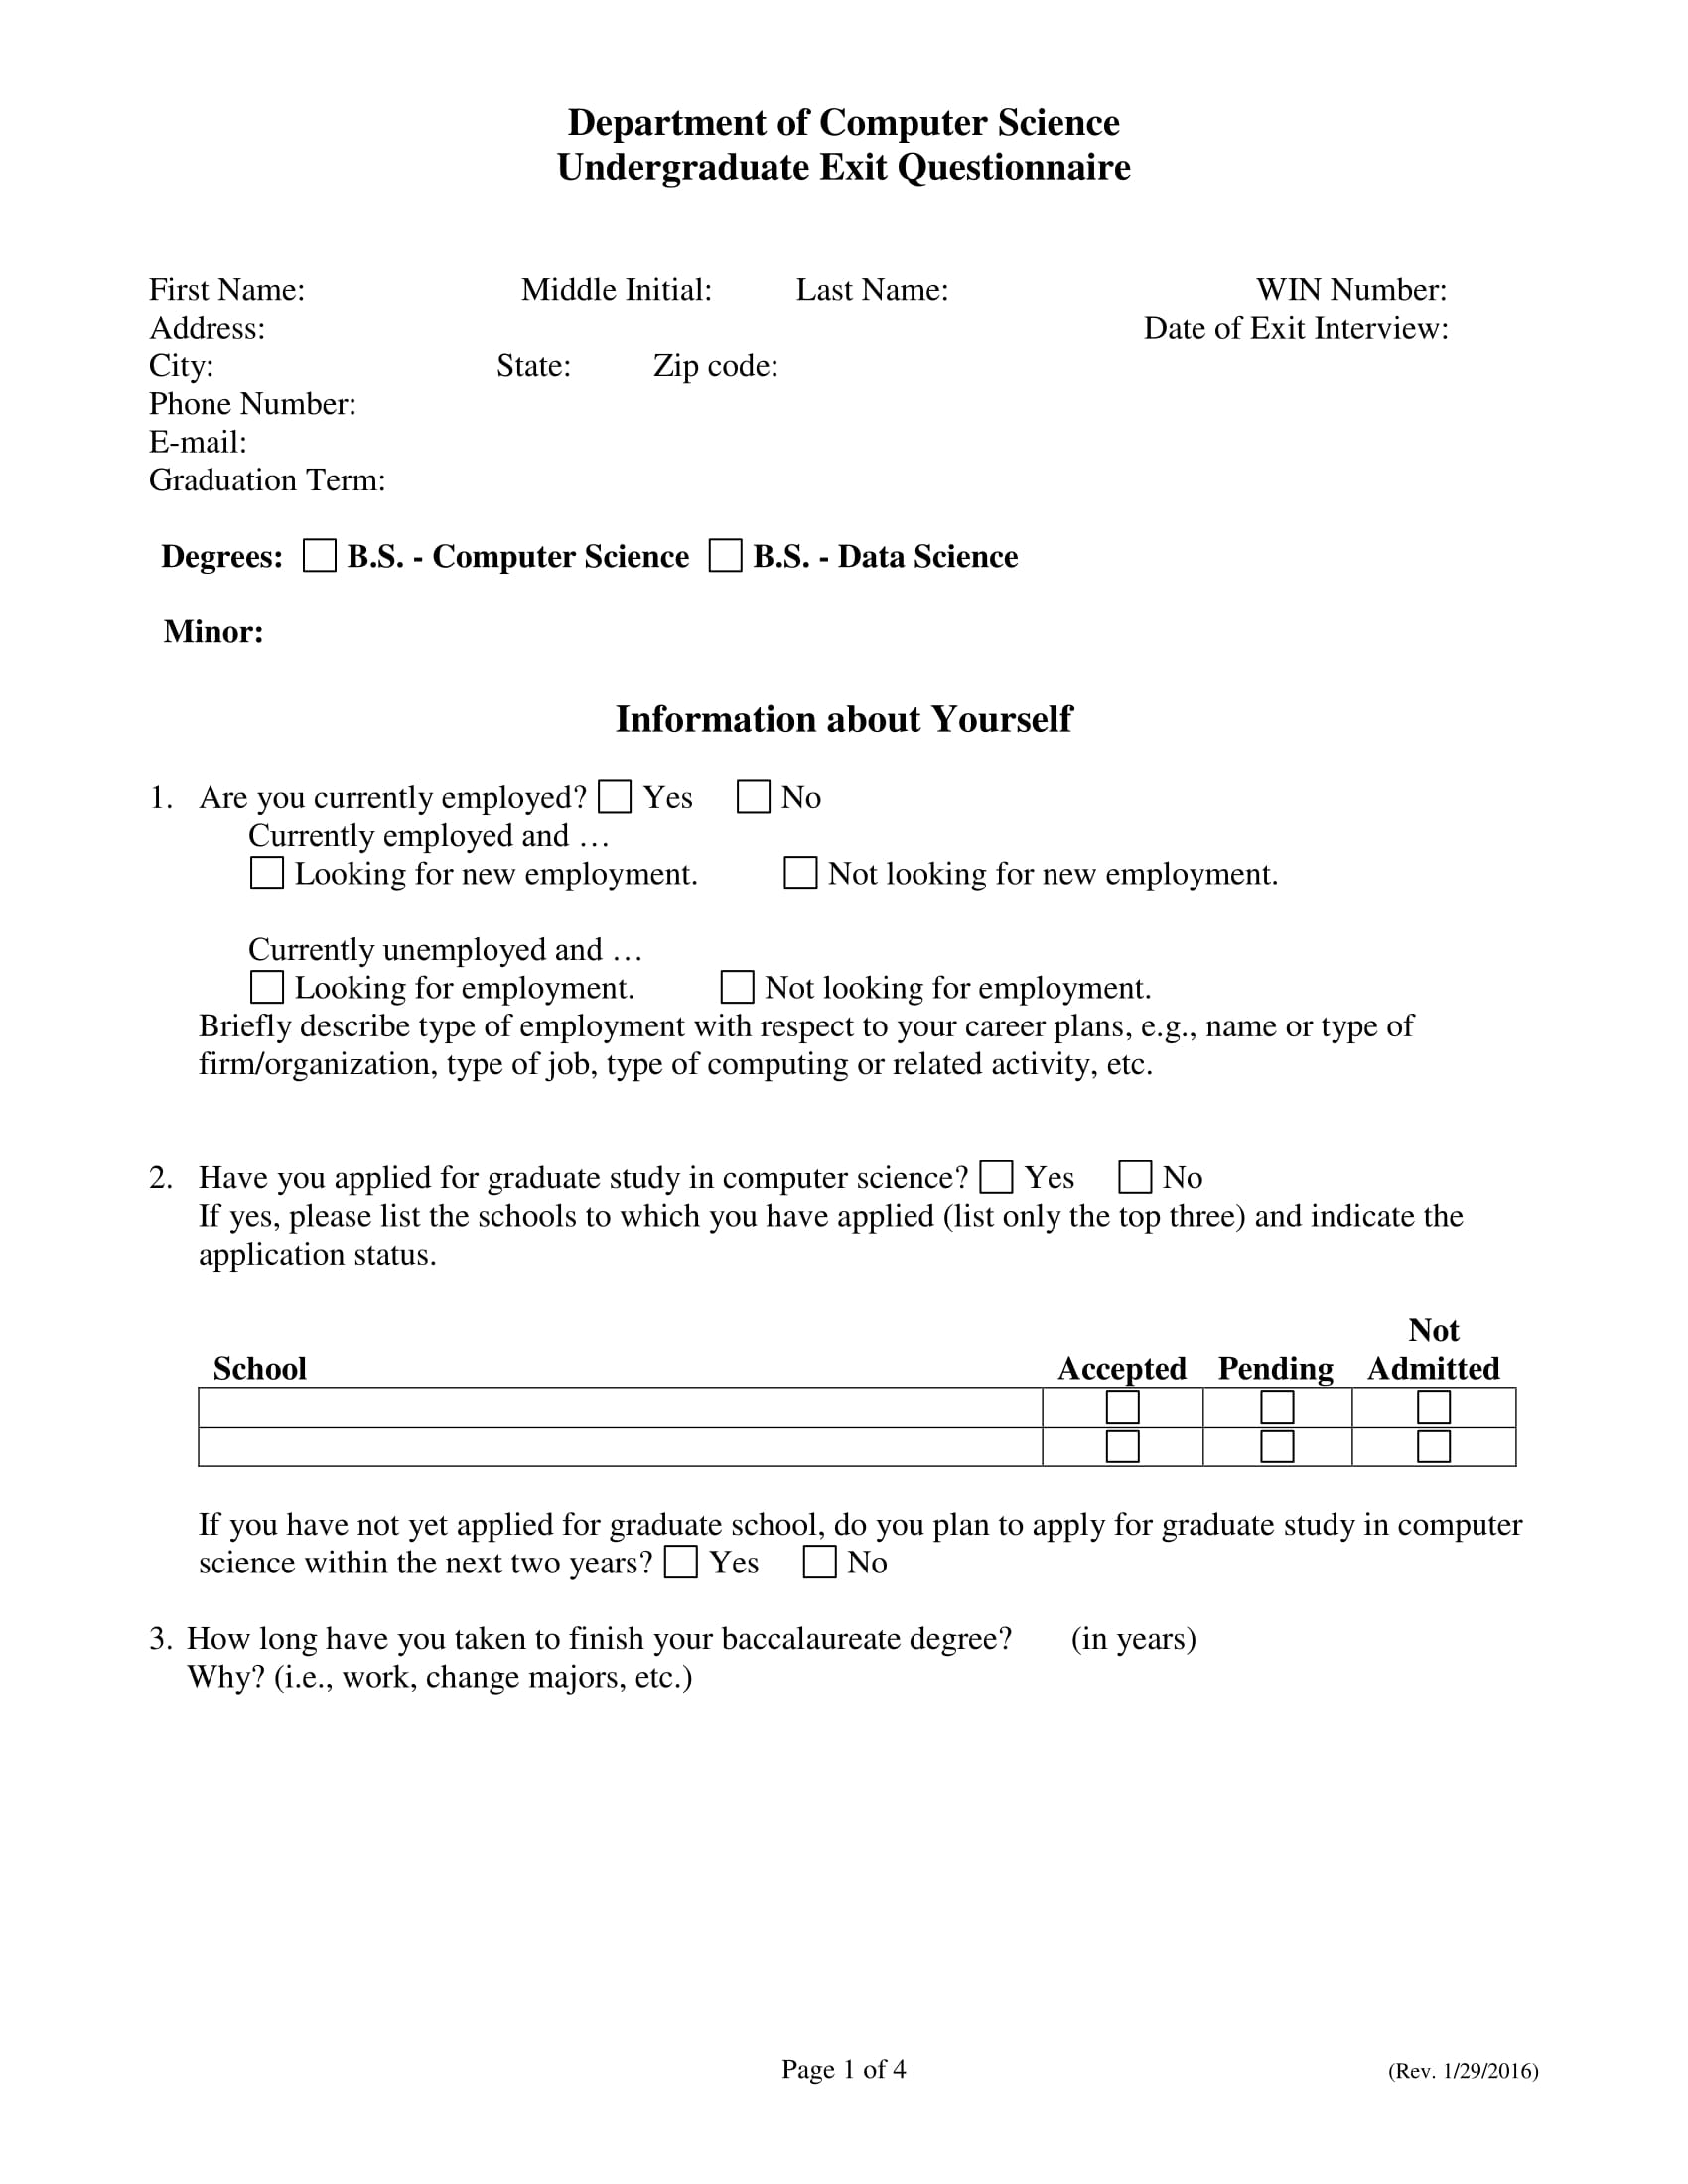 undergraduate exit questionnaire form 1